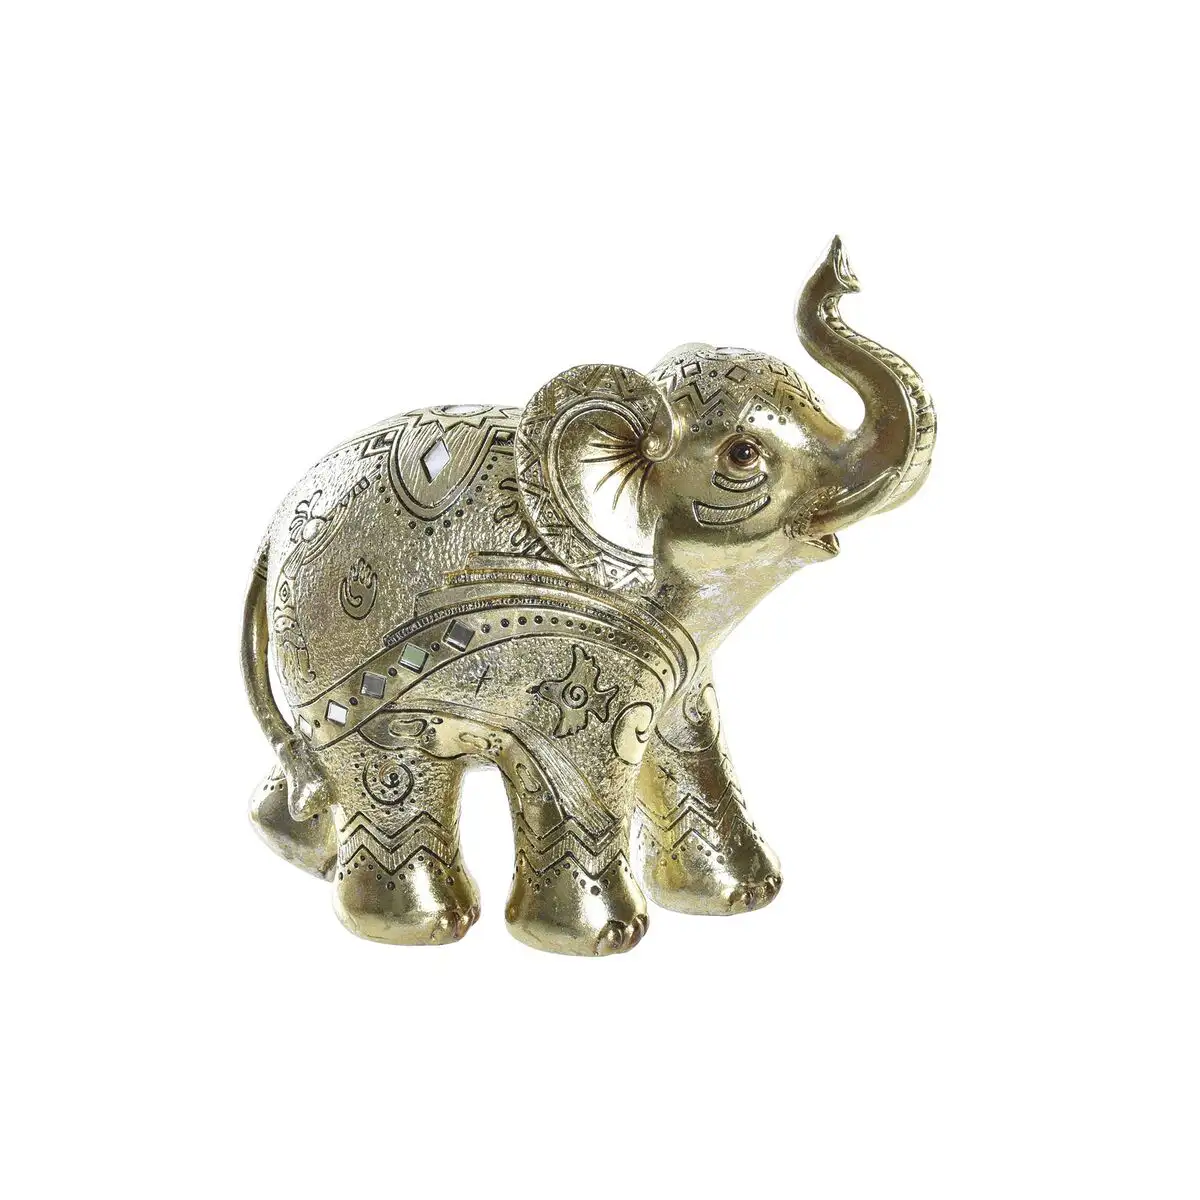 Figurine decorative dkd home decor dore elephant colonial 19 x 8 x 18 cm_5402. DIAYTAR SENEGAL - L'Art de Vivre avec Authenticité. Explorez notre gamme de produits artisanaux et découvrez des articles qui apportent une touche unique à votre vie.